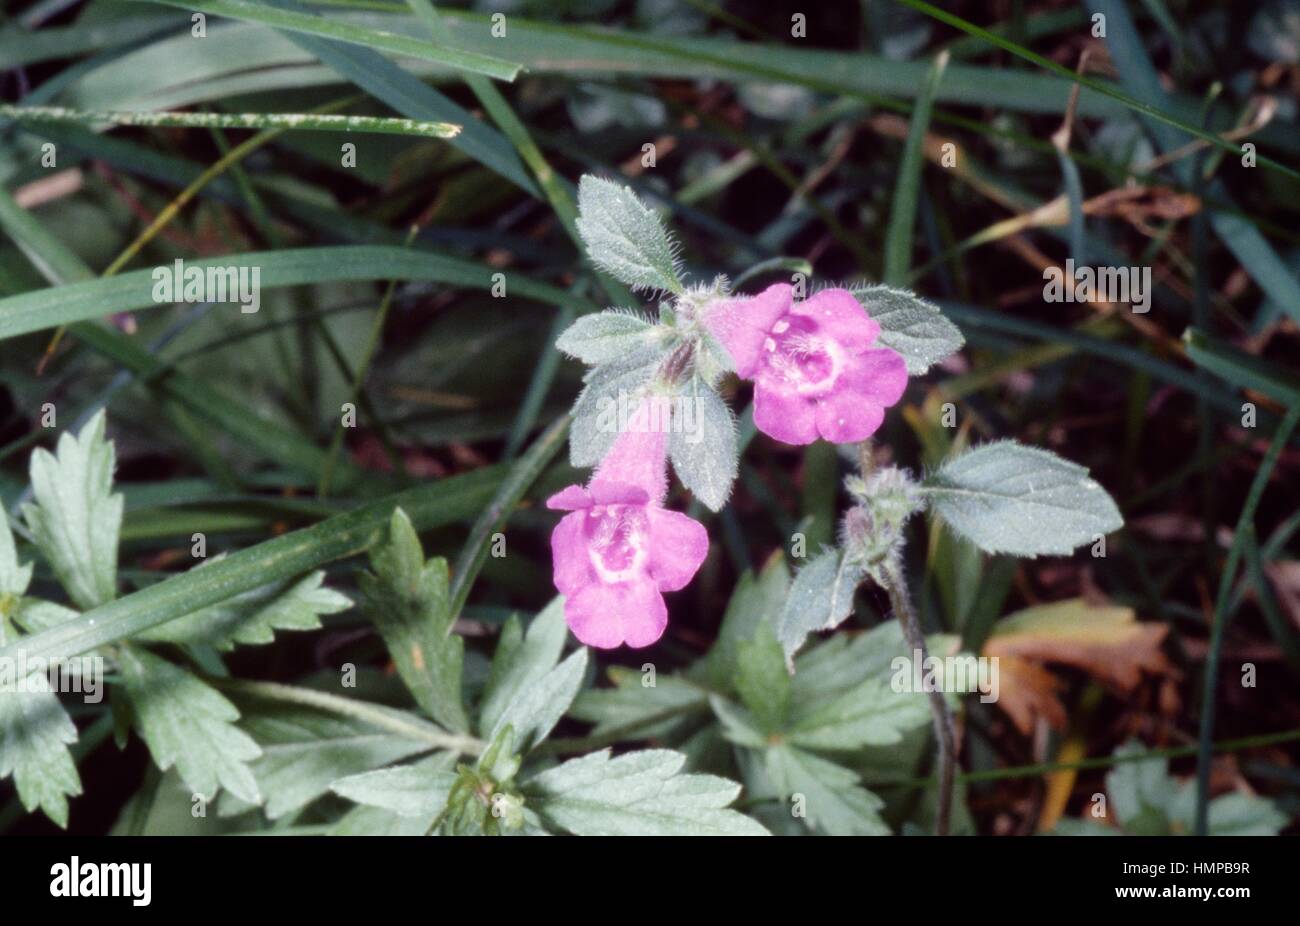 Calmintha (Clinopodium menthifolium), Lamiaceae. Stock Photo